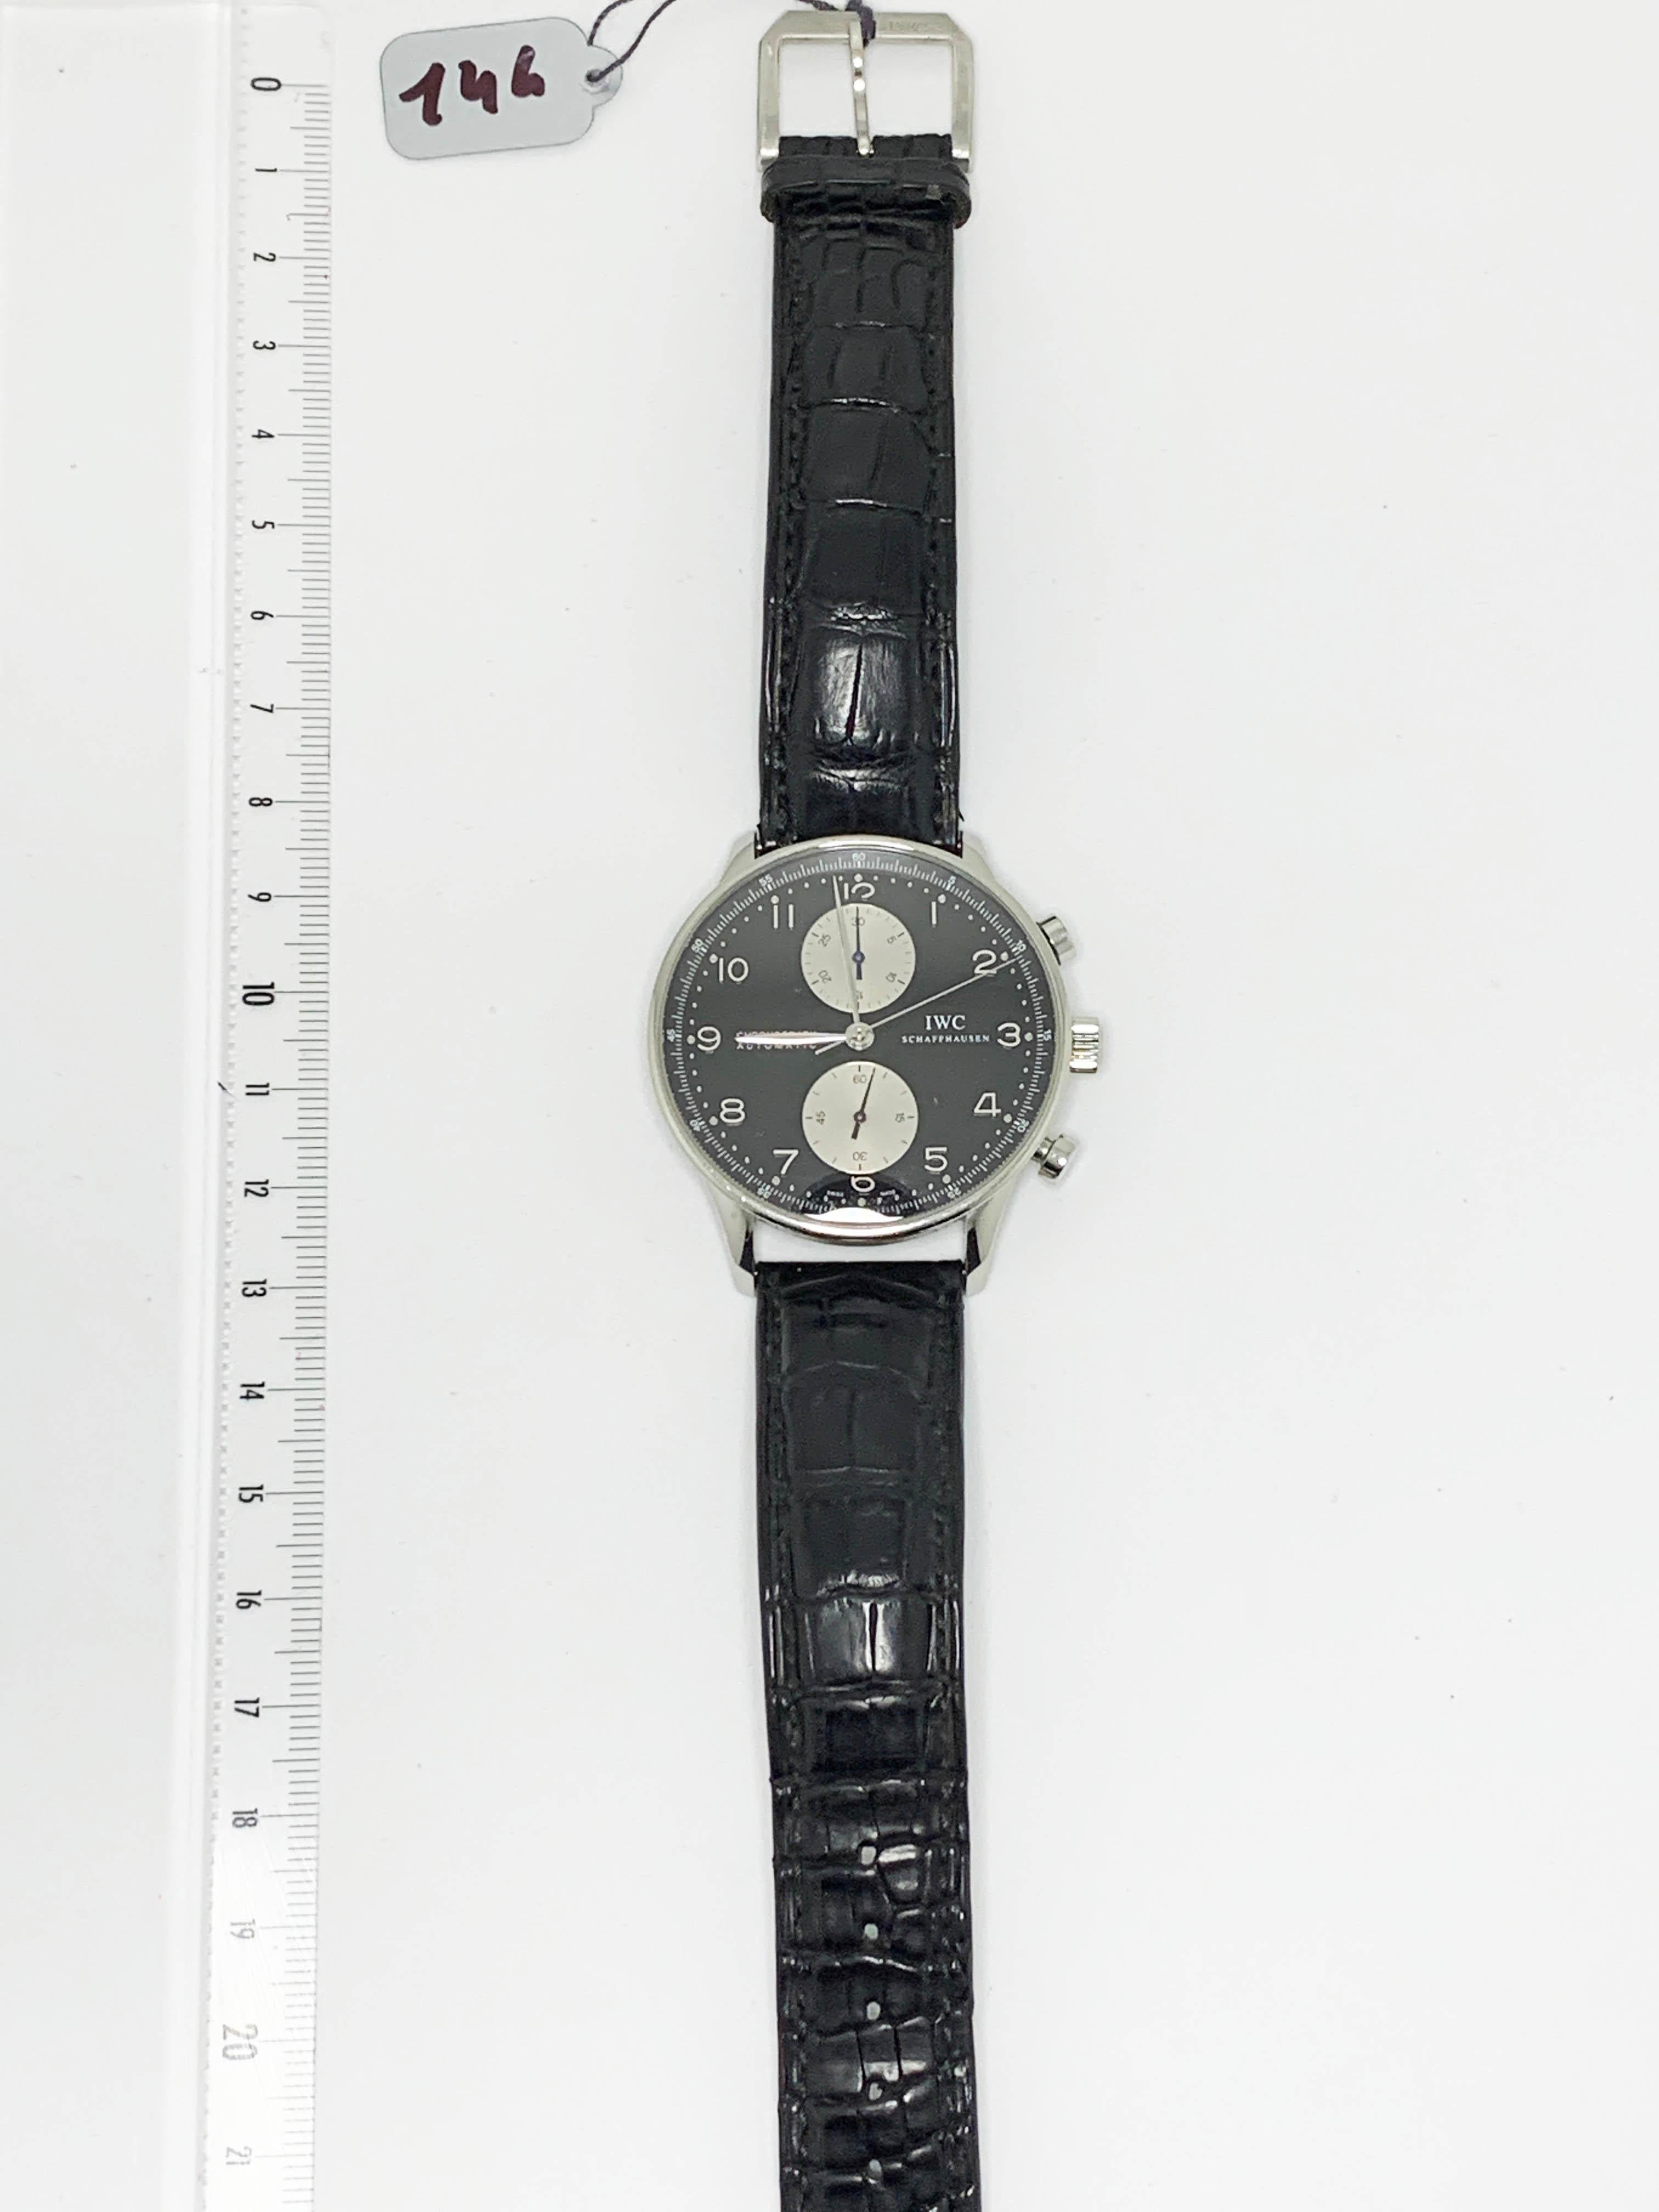 IWC
Portuguese
stopwatch
steel/black crocodile strap
black dial/2 counters silver
automatic
circa 2010
box
4700 euros